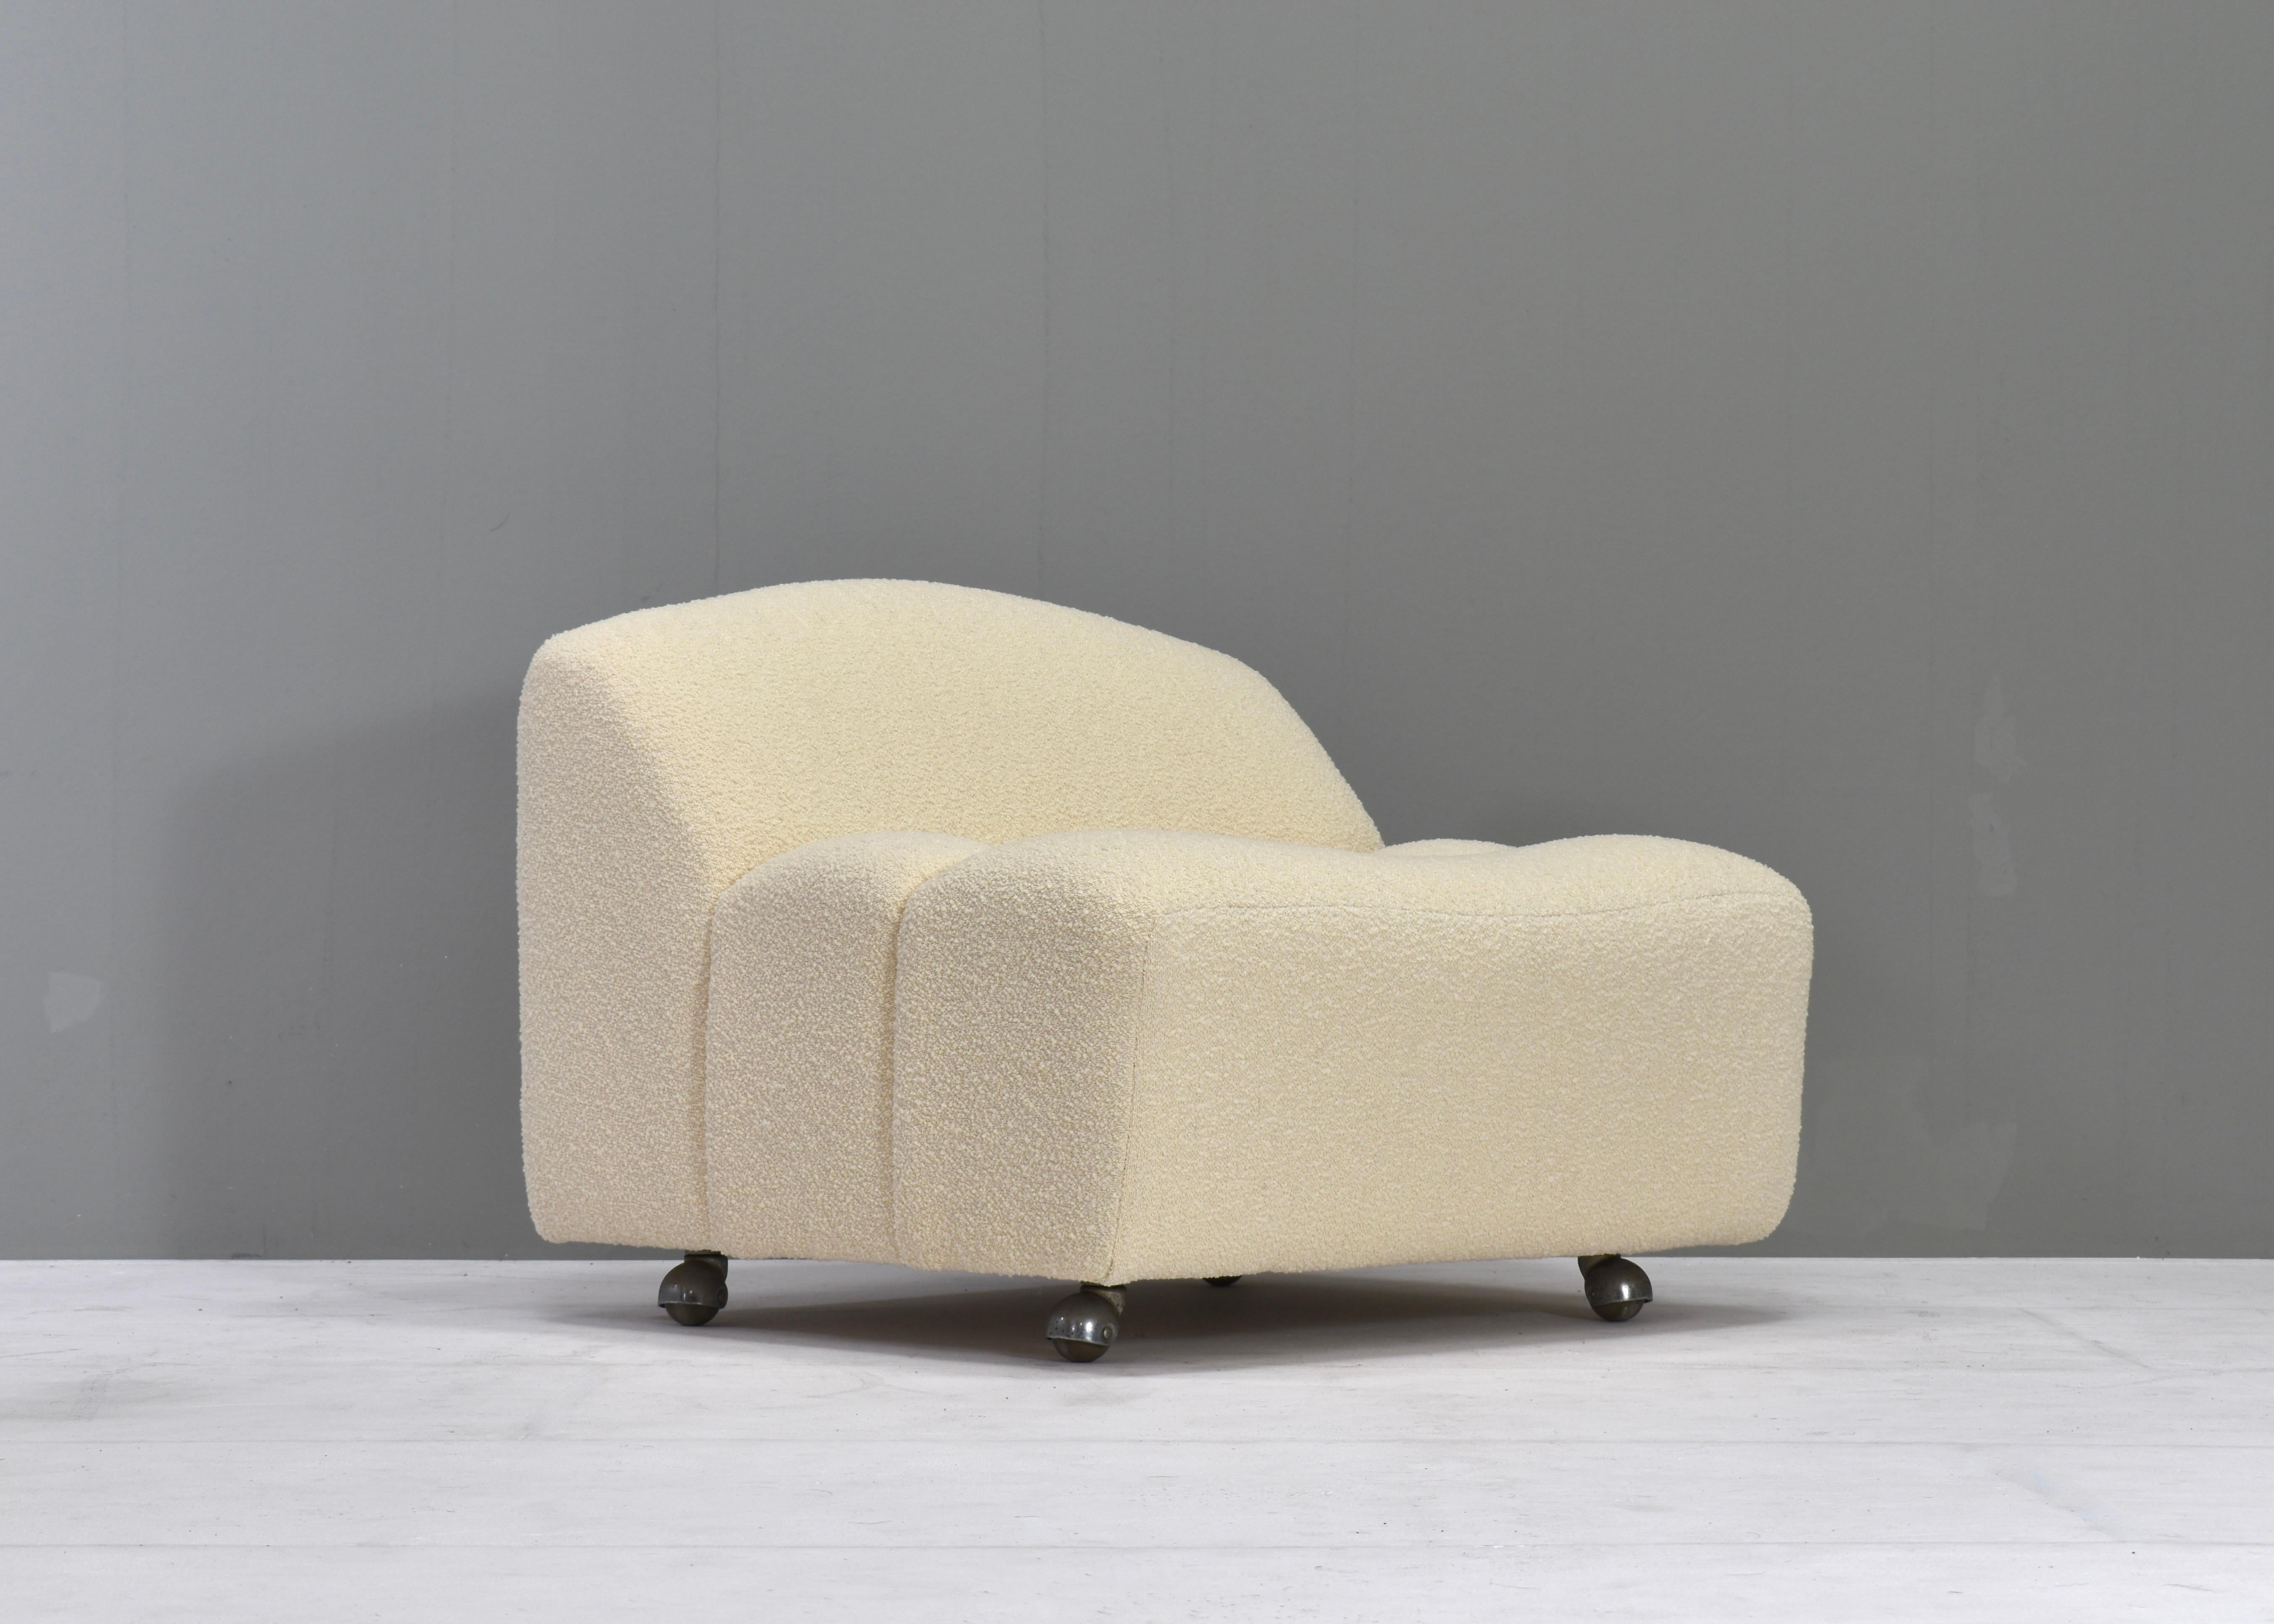 Seltener ABCD F260 Stuhl von Pierre Paulin für Artifort - Niederlande, 1968. 
Er ist mit einem schönen Woll-/Baumwollstoff aus Paris, Frankreich, neu bezogen.
Der Stuhl ist sehr bequem und ergonomisch zu sitzen.
Die Artikel sind noch mit den